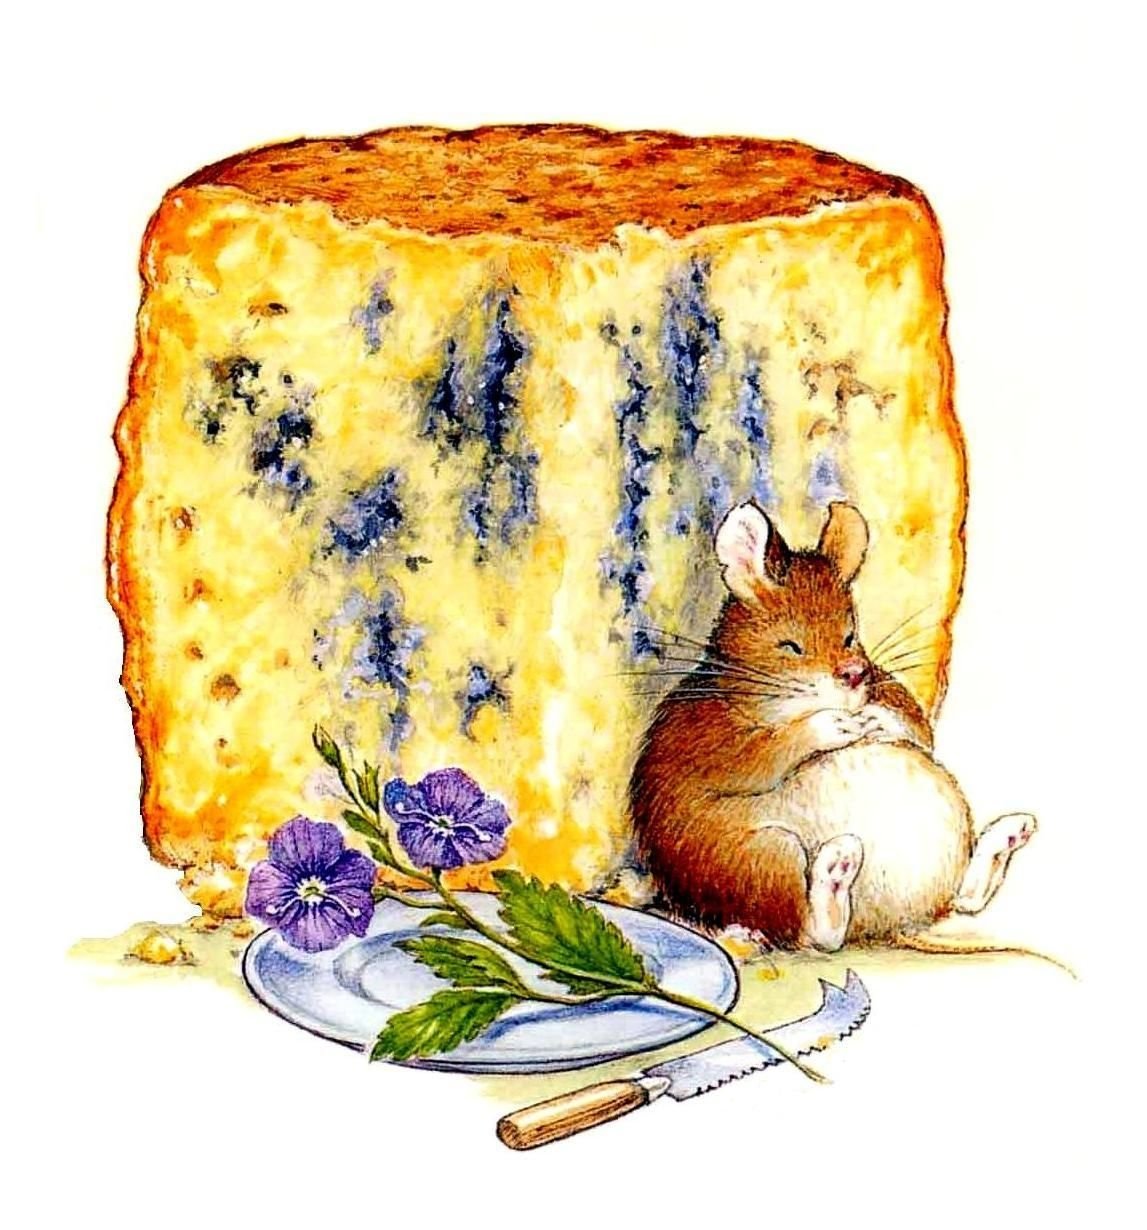 Иллюстрация мышонка в сыре